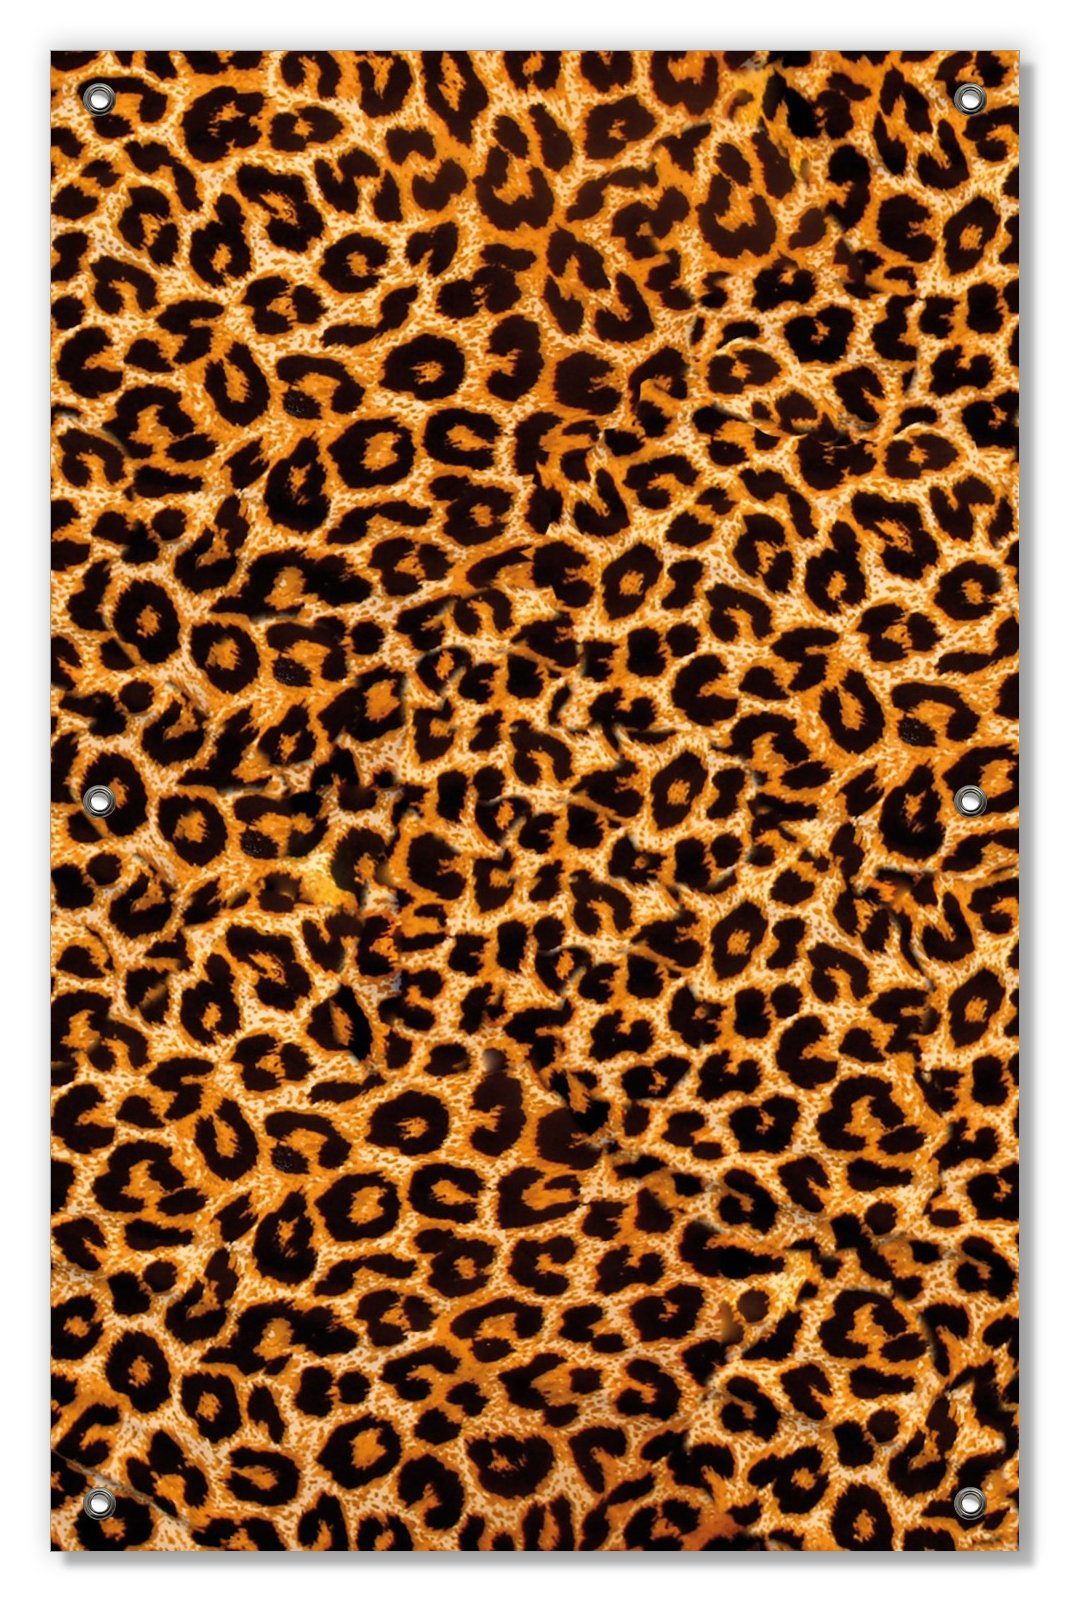 Sonnenschutz Leopardenmuster in orange schwarz, Wallario, blickdicht, mit Saugnäpfen, wiederablösbar und wiederverwendbar